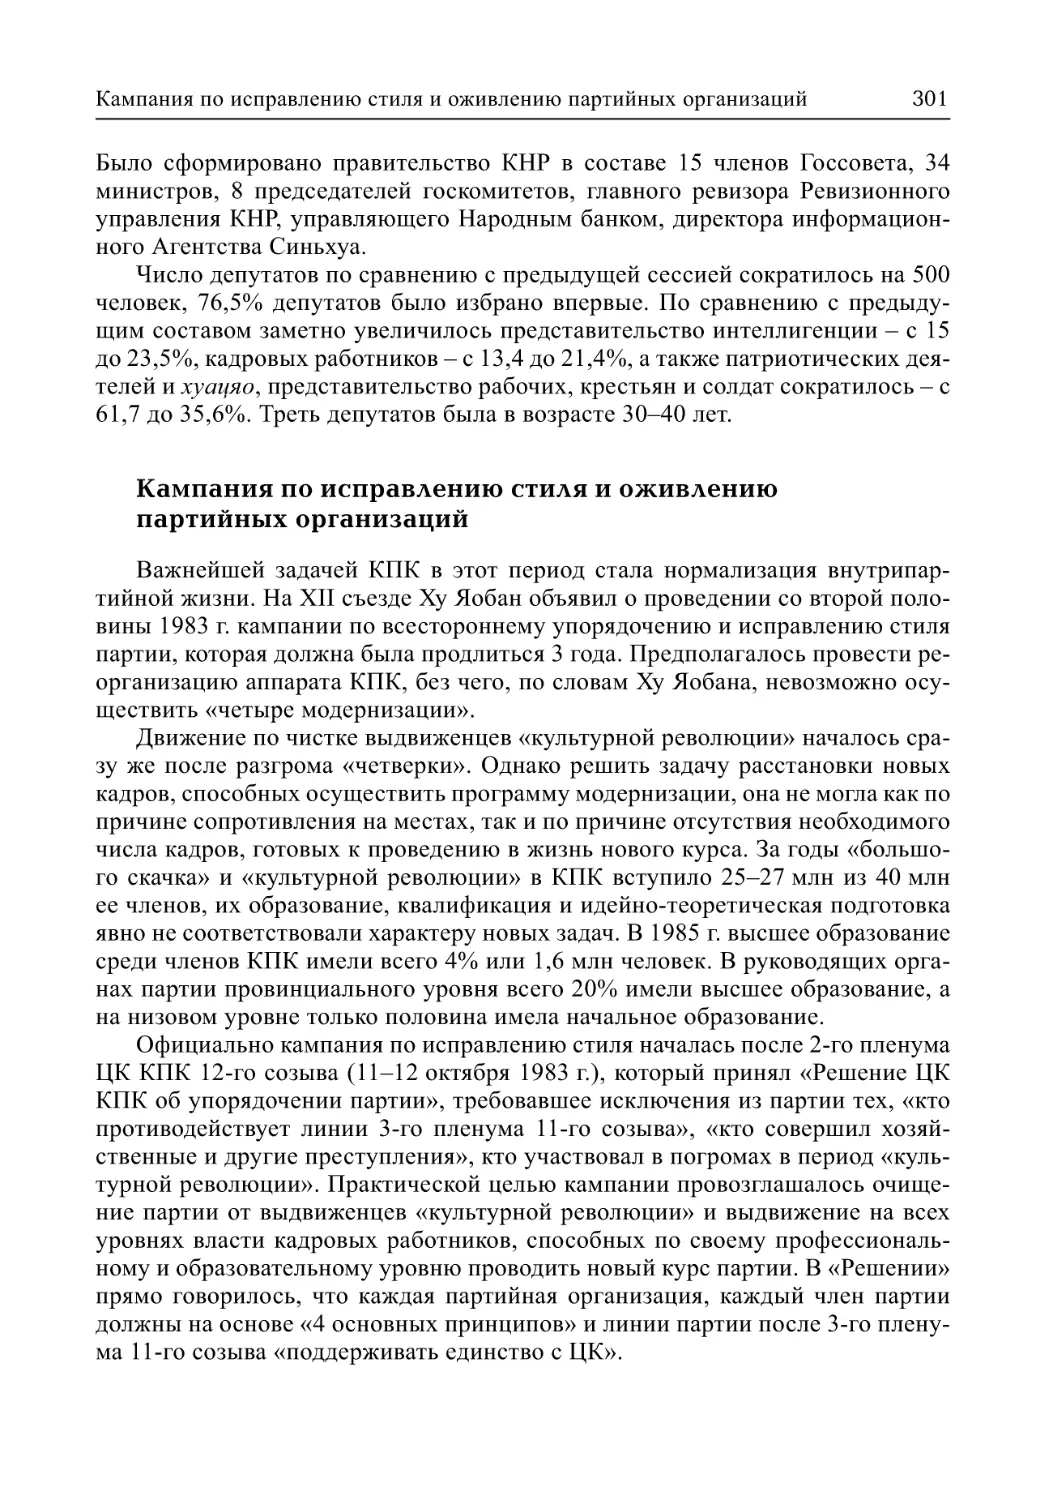 Кампания по исправлению стиля и оживлению партийных организаций (А.В. Виноградов)